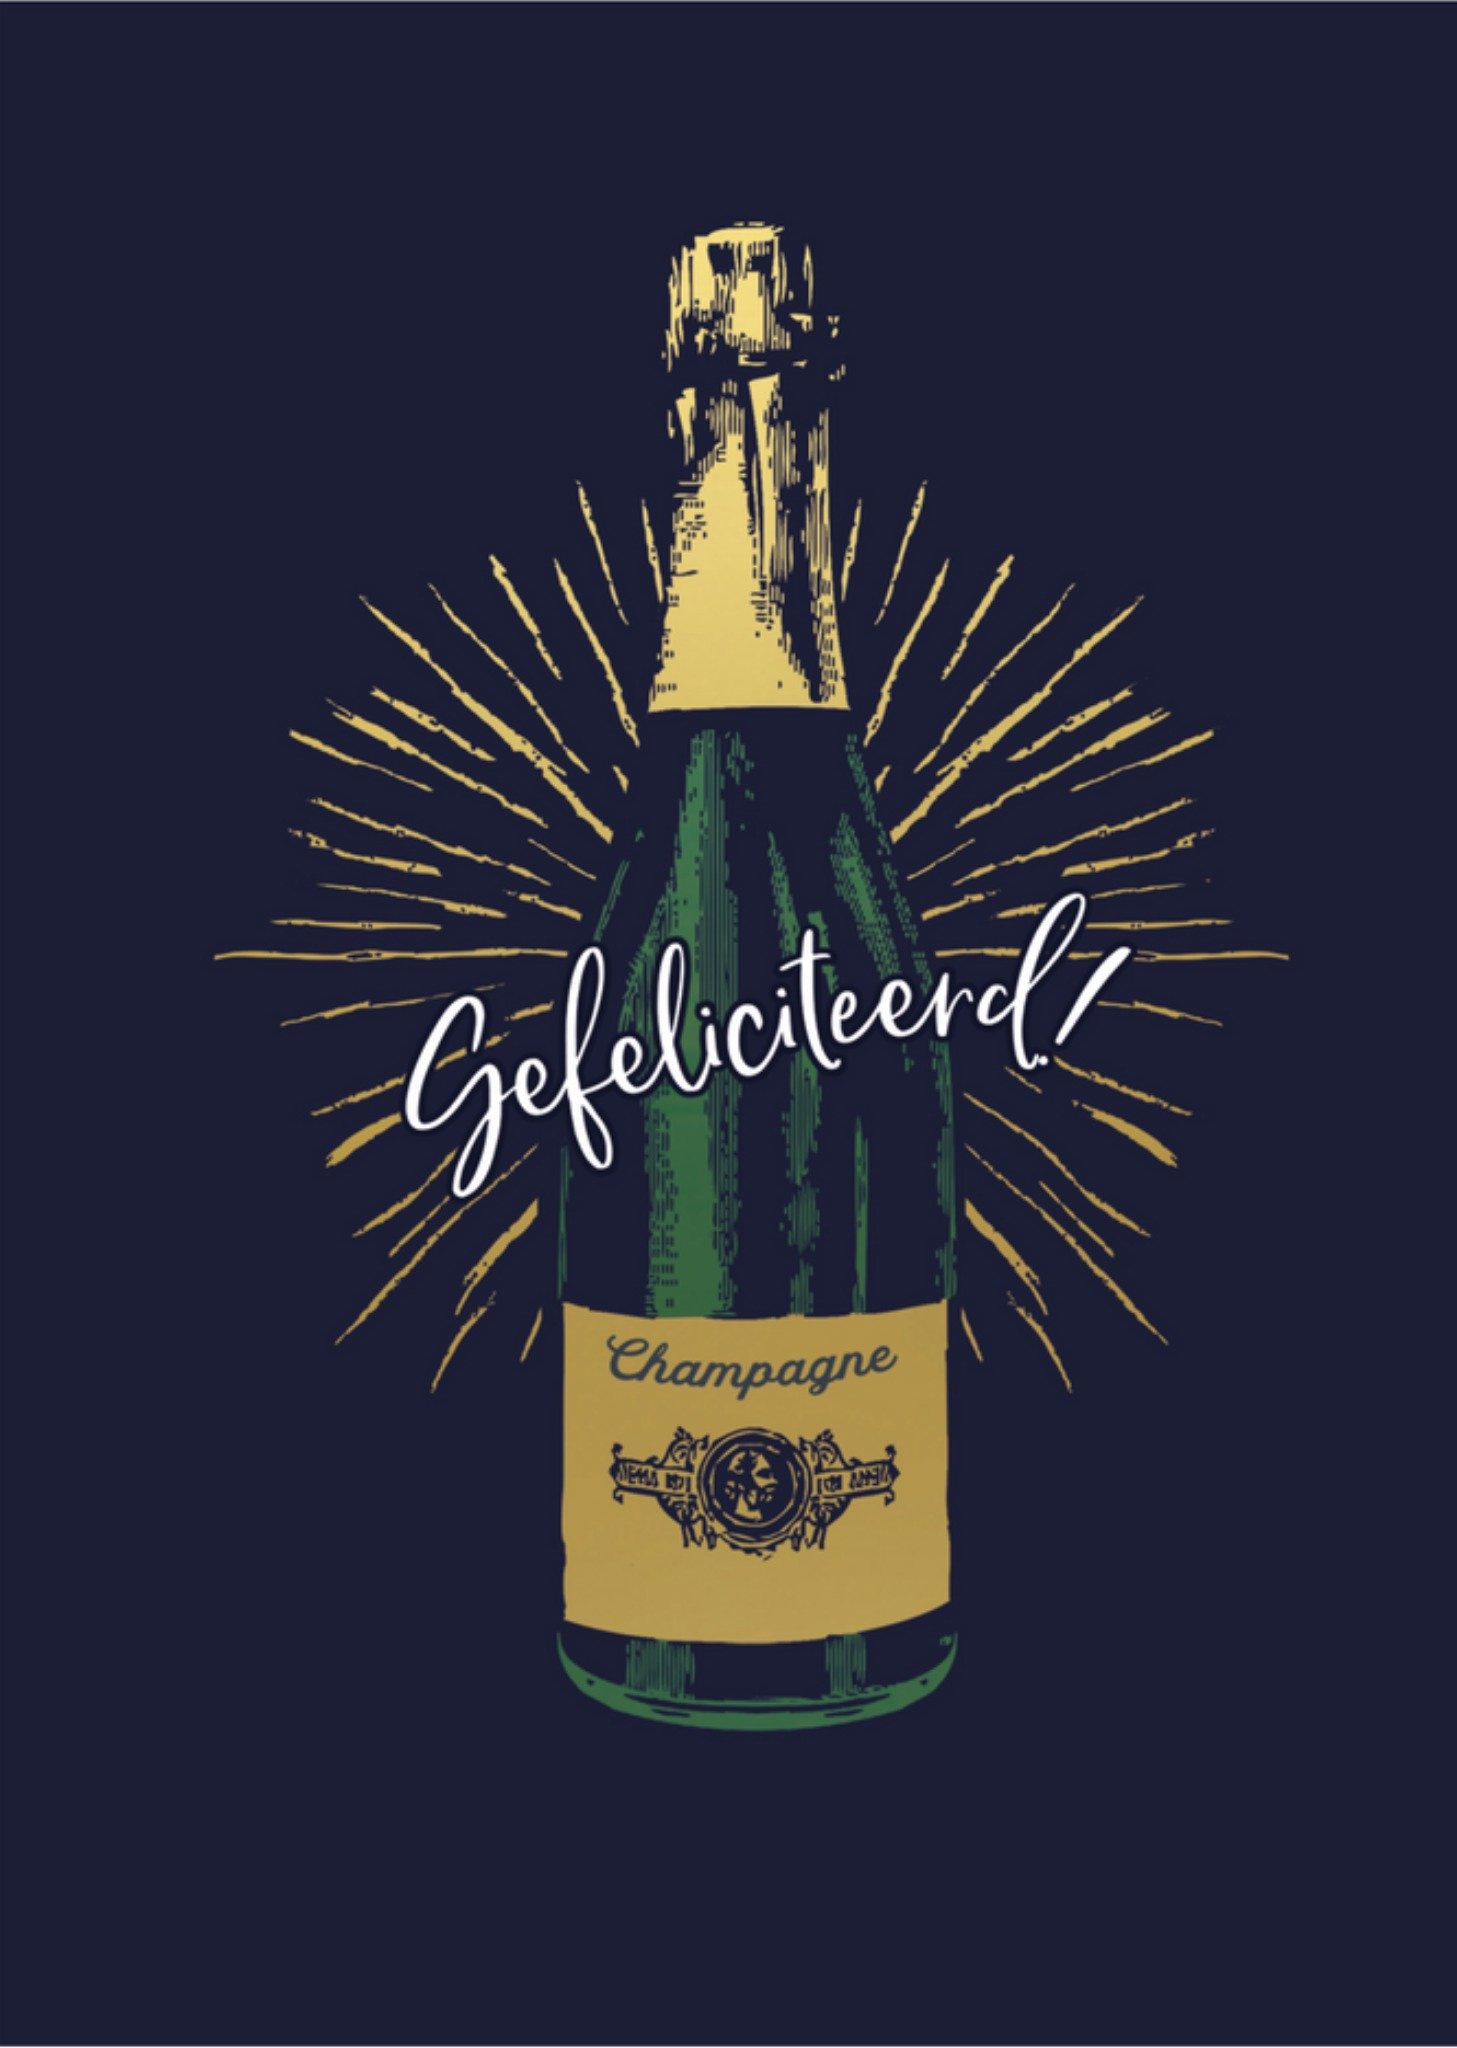 Paperclip - Felicitatiekaart - Champagne